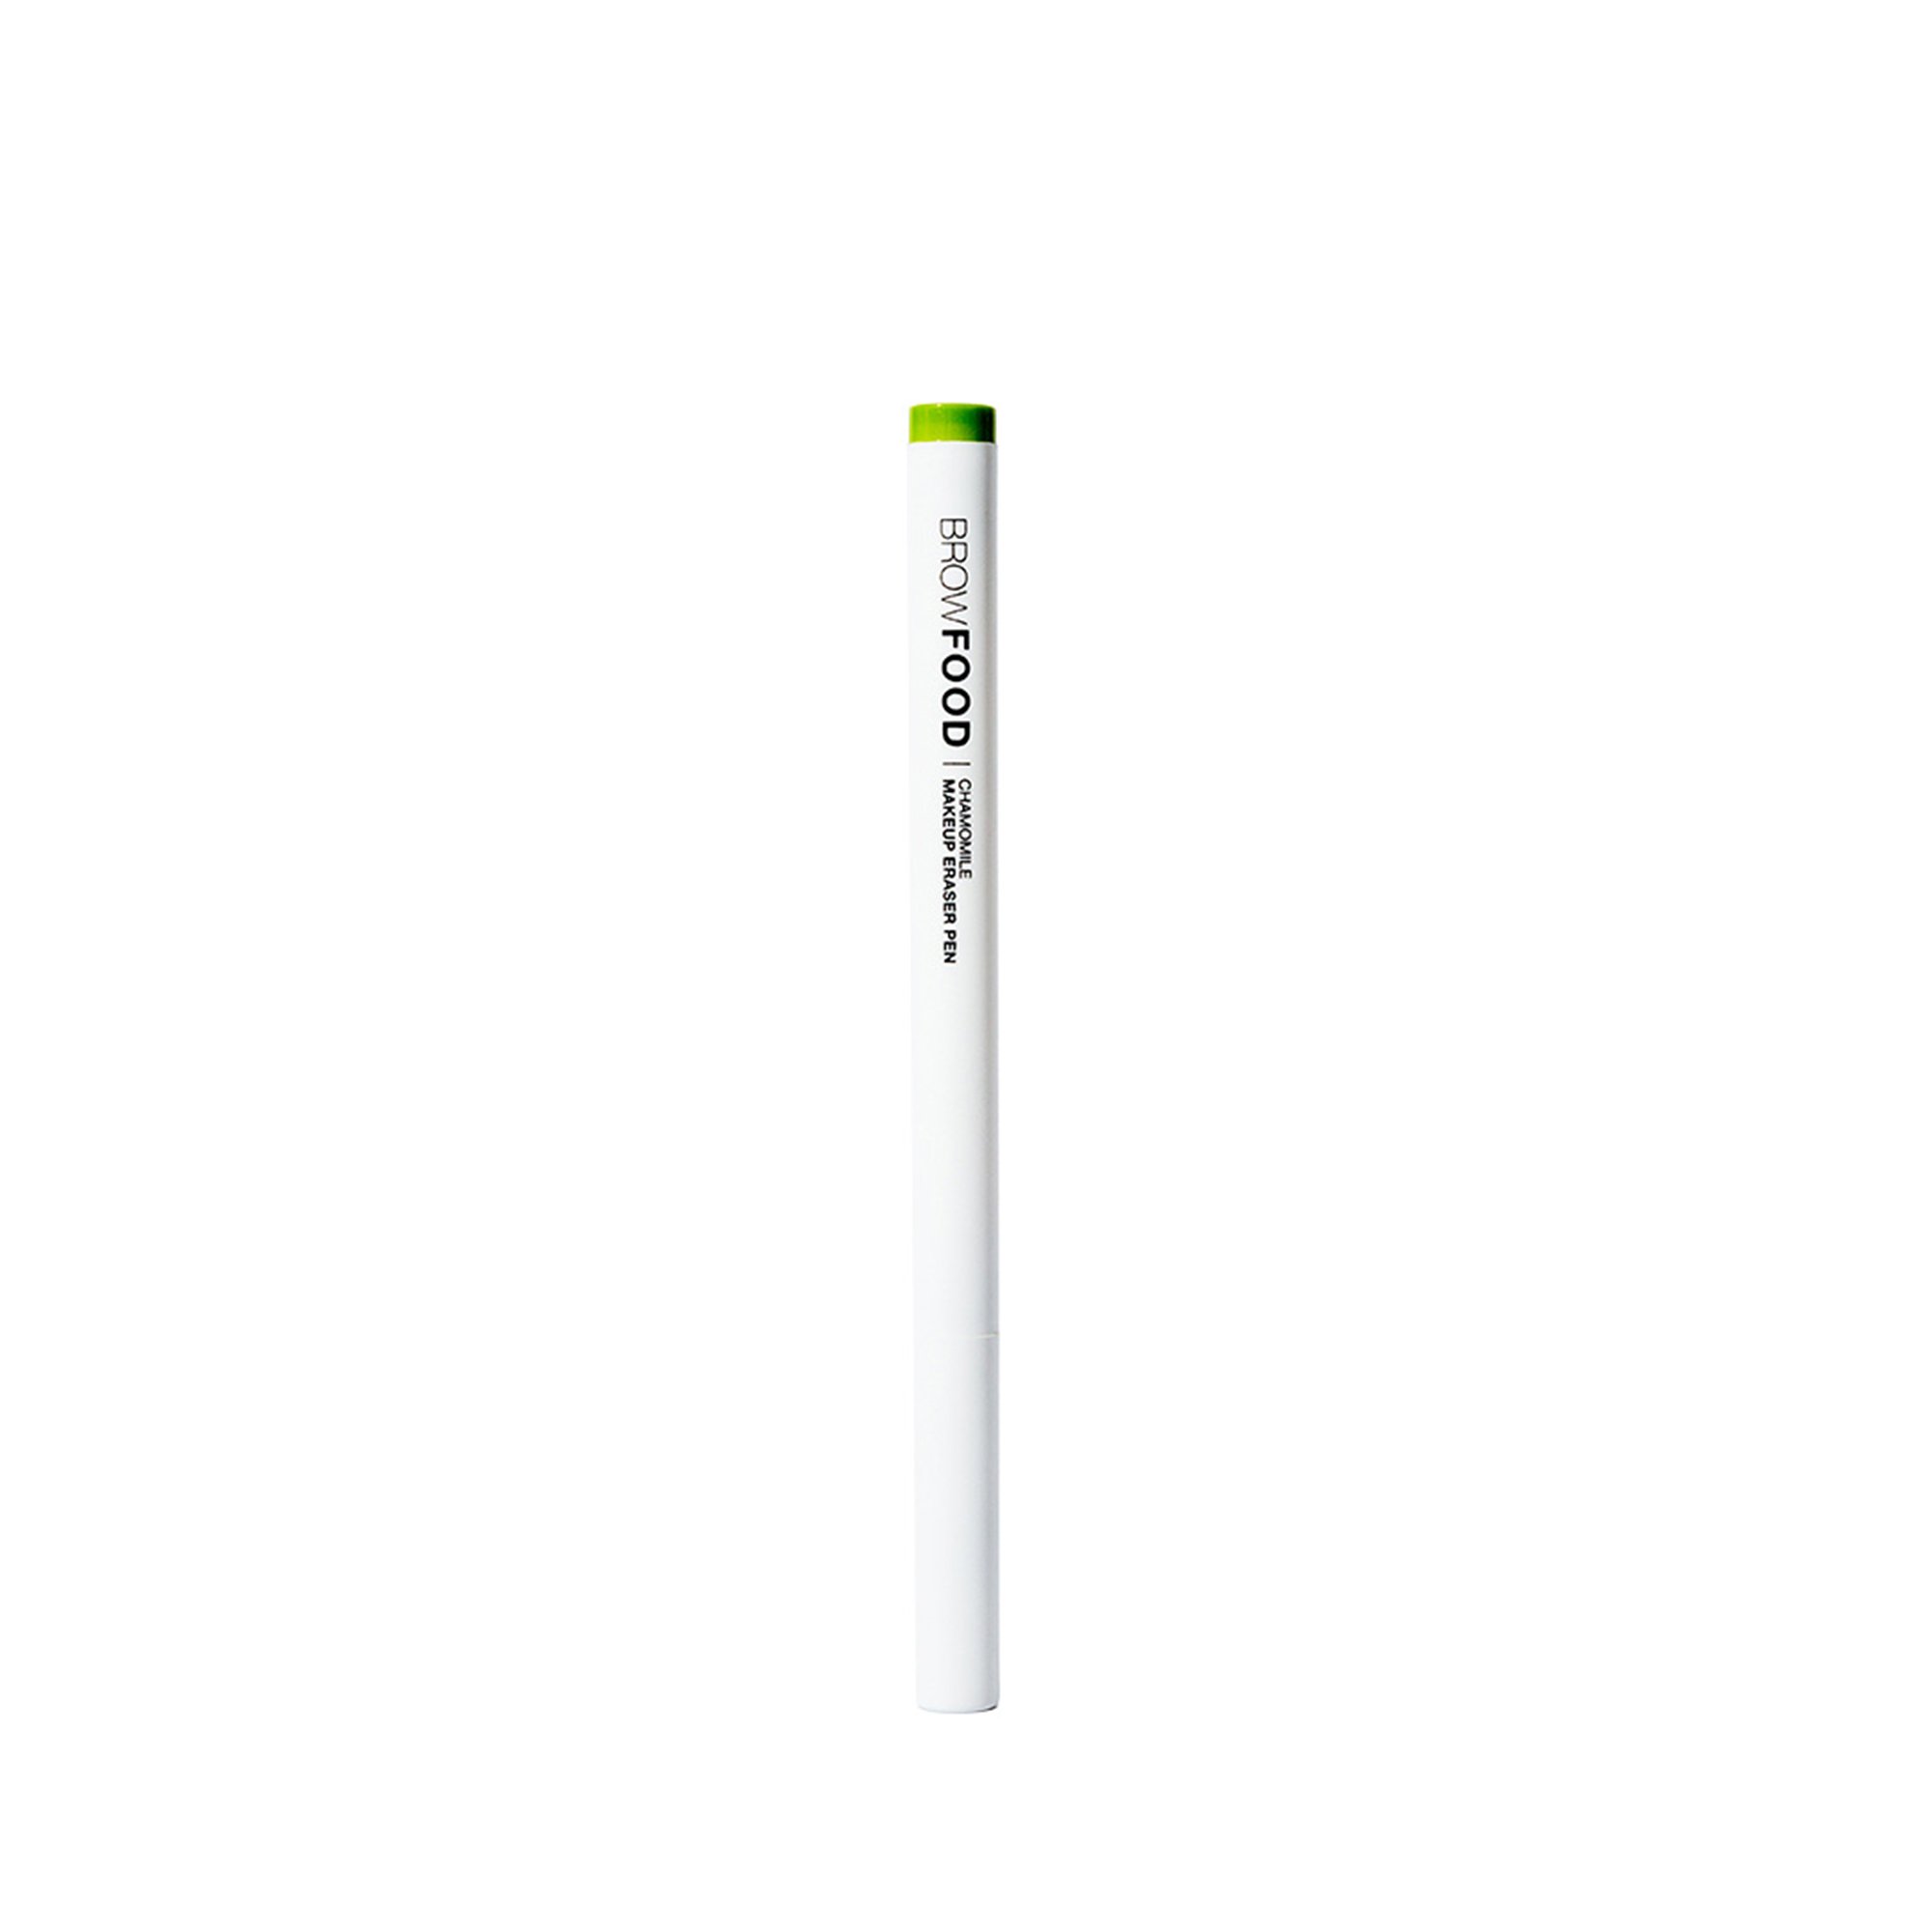 LASHFOOD - Chamomile Makeup Eraser Pen 1 ml - Skjønnhet